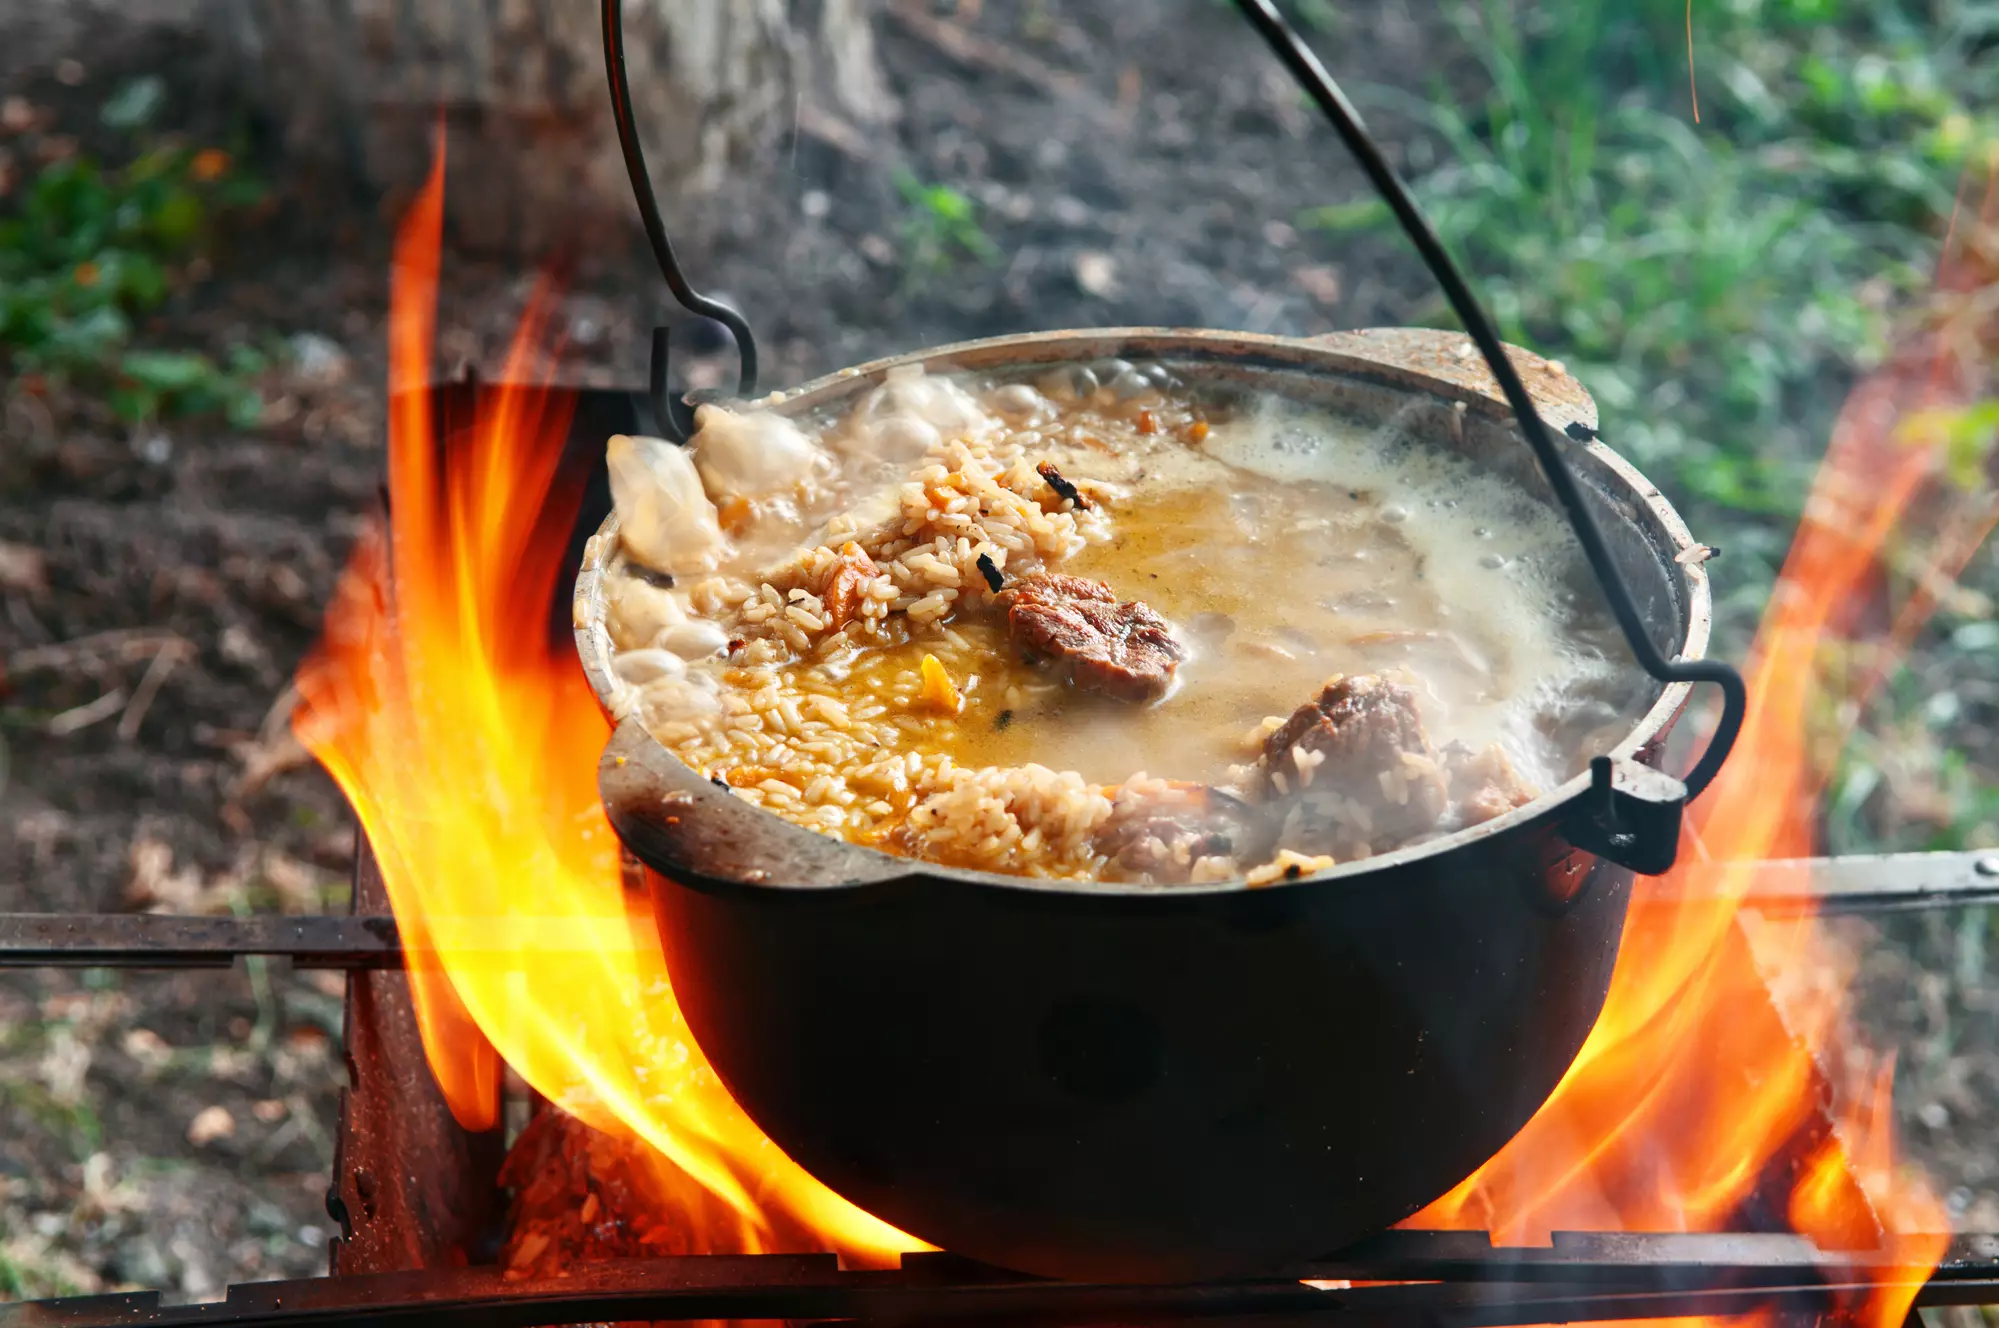 Плов в казане на костре - вкусные и интересные рецепты настоящего узбекского блюда